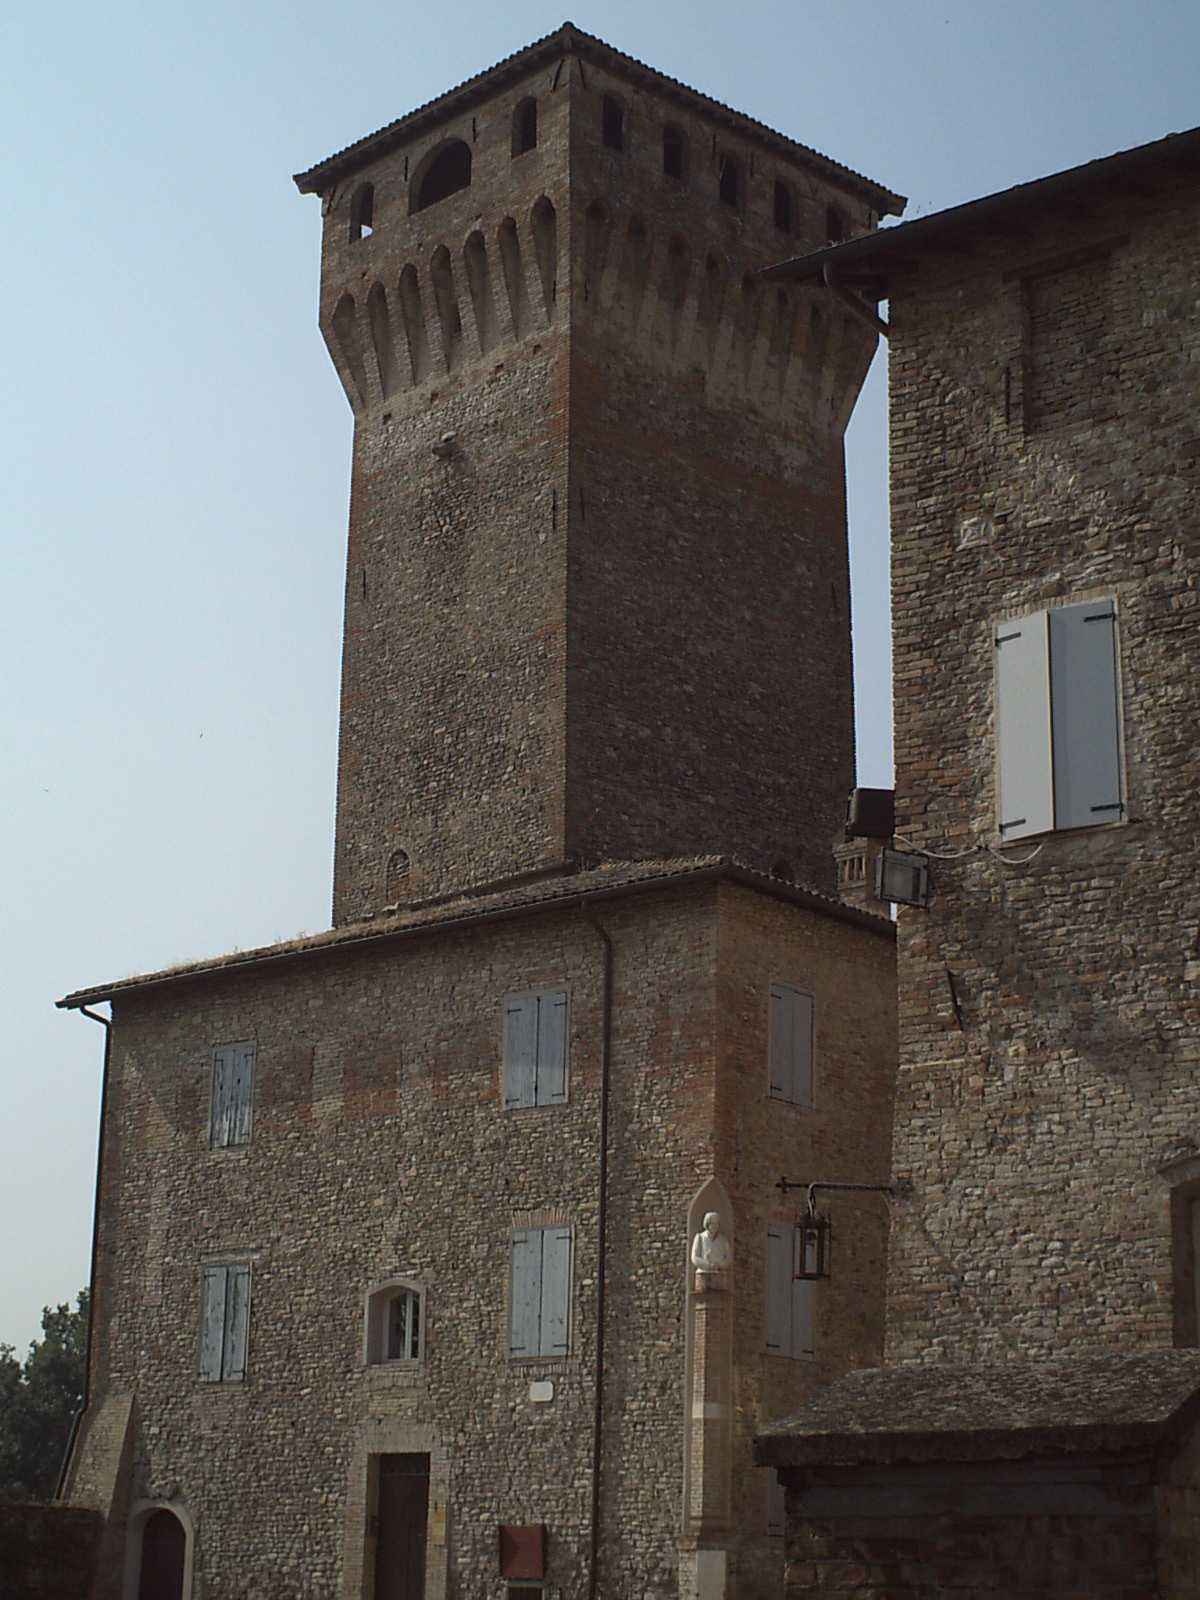 foto: https://upload.wikimedia.org/wikipedia/commons/7/7b/Rocca_e_torre_e_edificio_del_museo.JPG